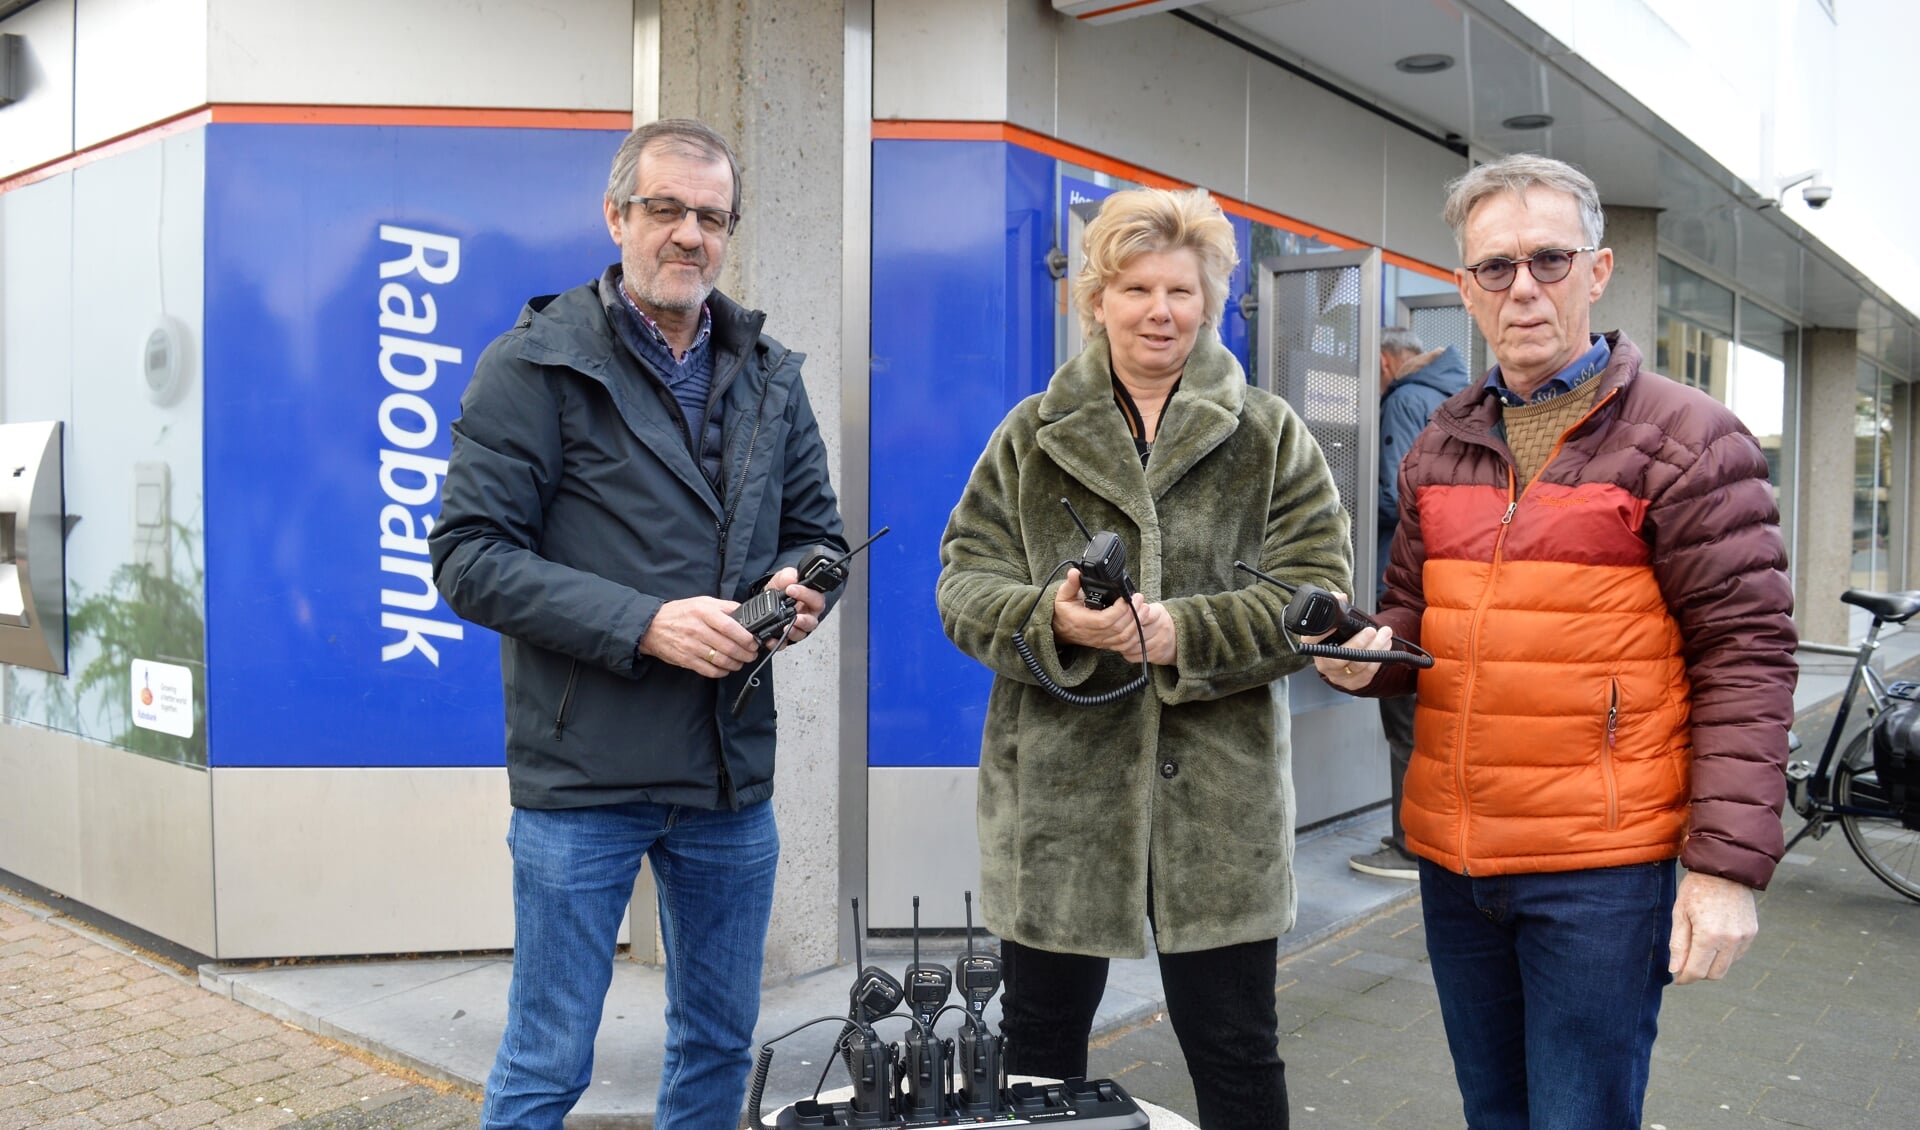 Namens hetvCoöperatie Fonds de Rabobank overhandigde Anje de Geus de portofoons aan Gerard Sluimers en Denny Nugteren